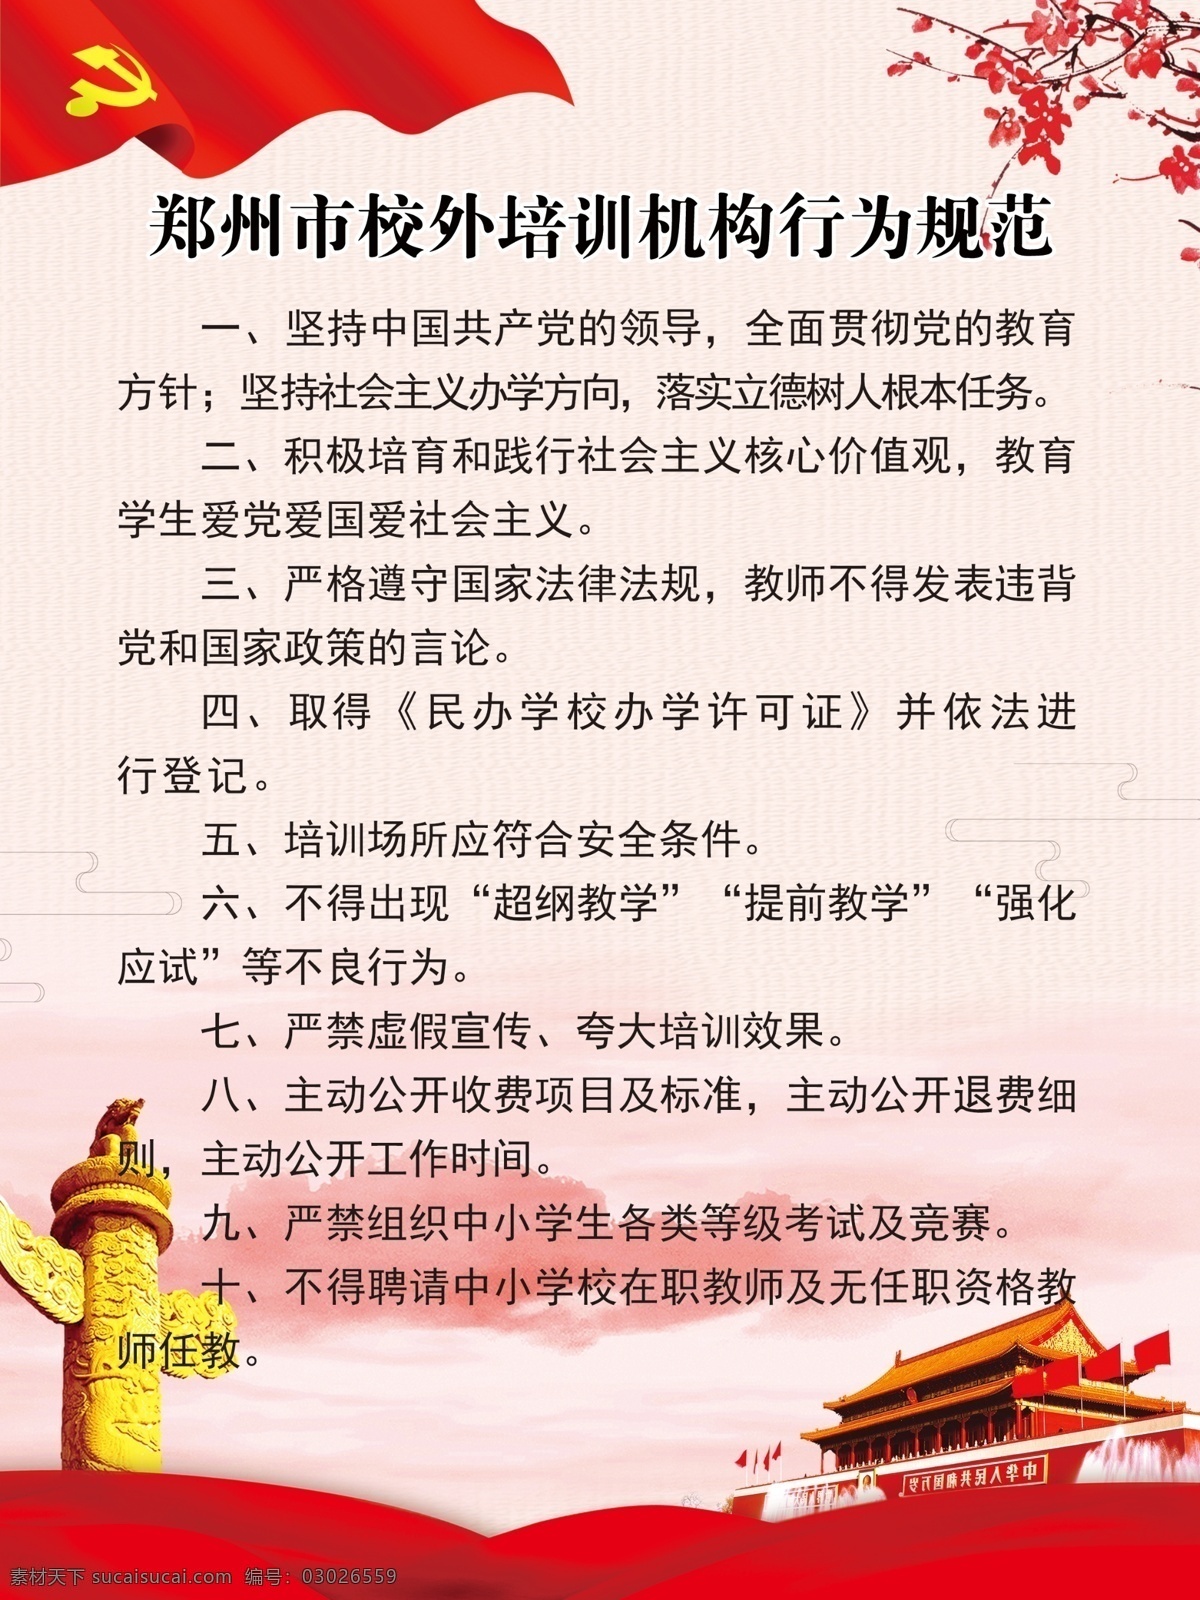 郑州市 校外 培训机构 行为规范 培训 制度 分层 党建制度 红色制度